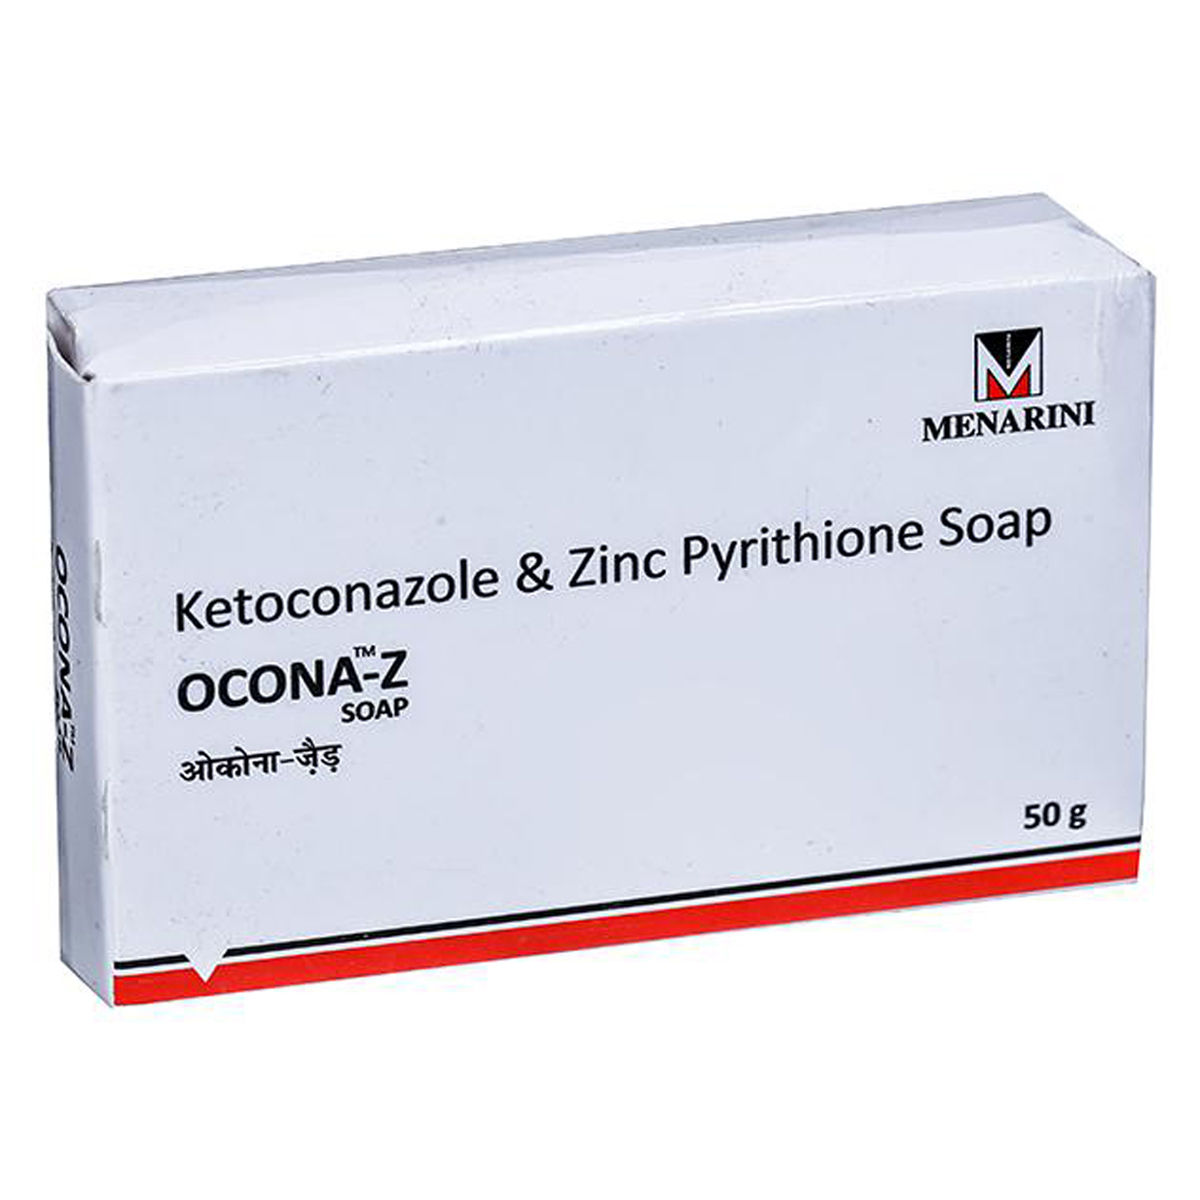 Buy Ocona-Z Soap, 50 gm Online